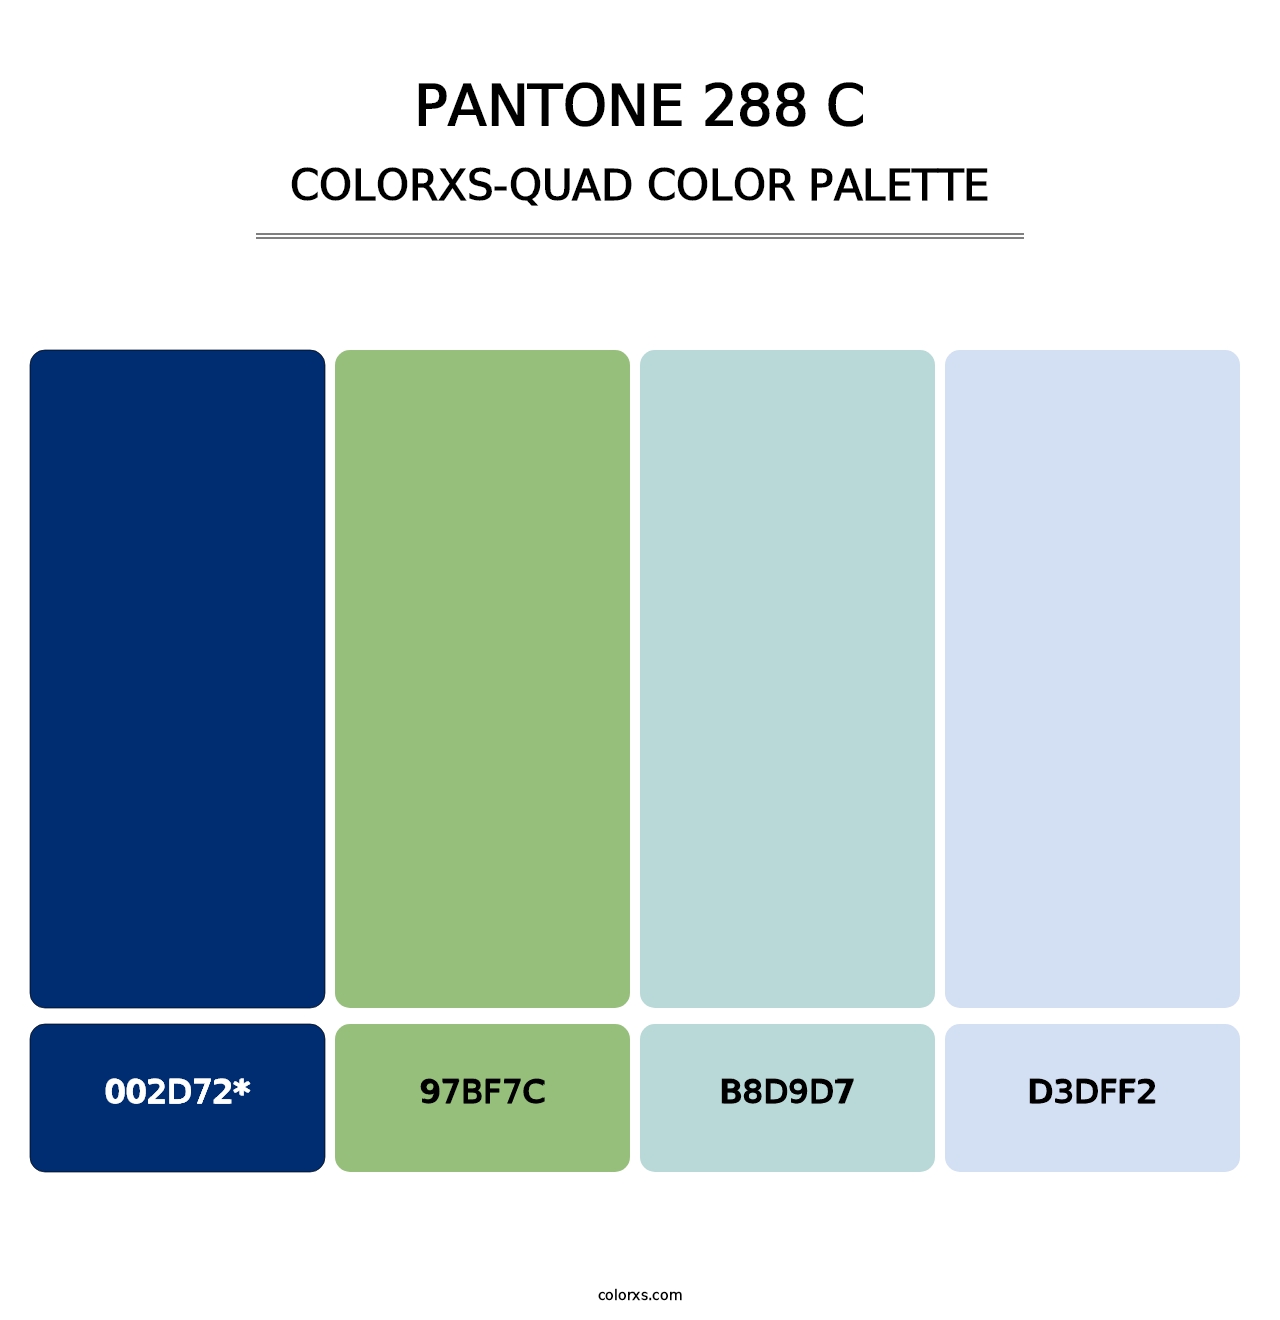 PANTONE 288 C - Colorxs Quad Palette